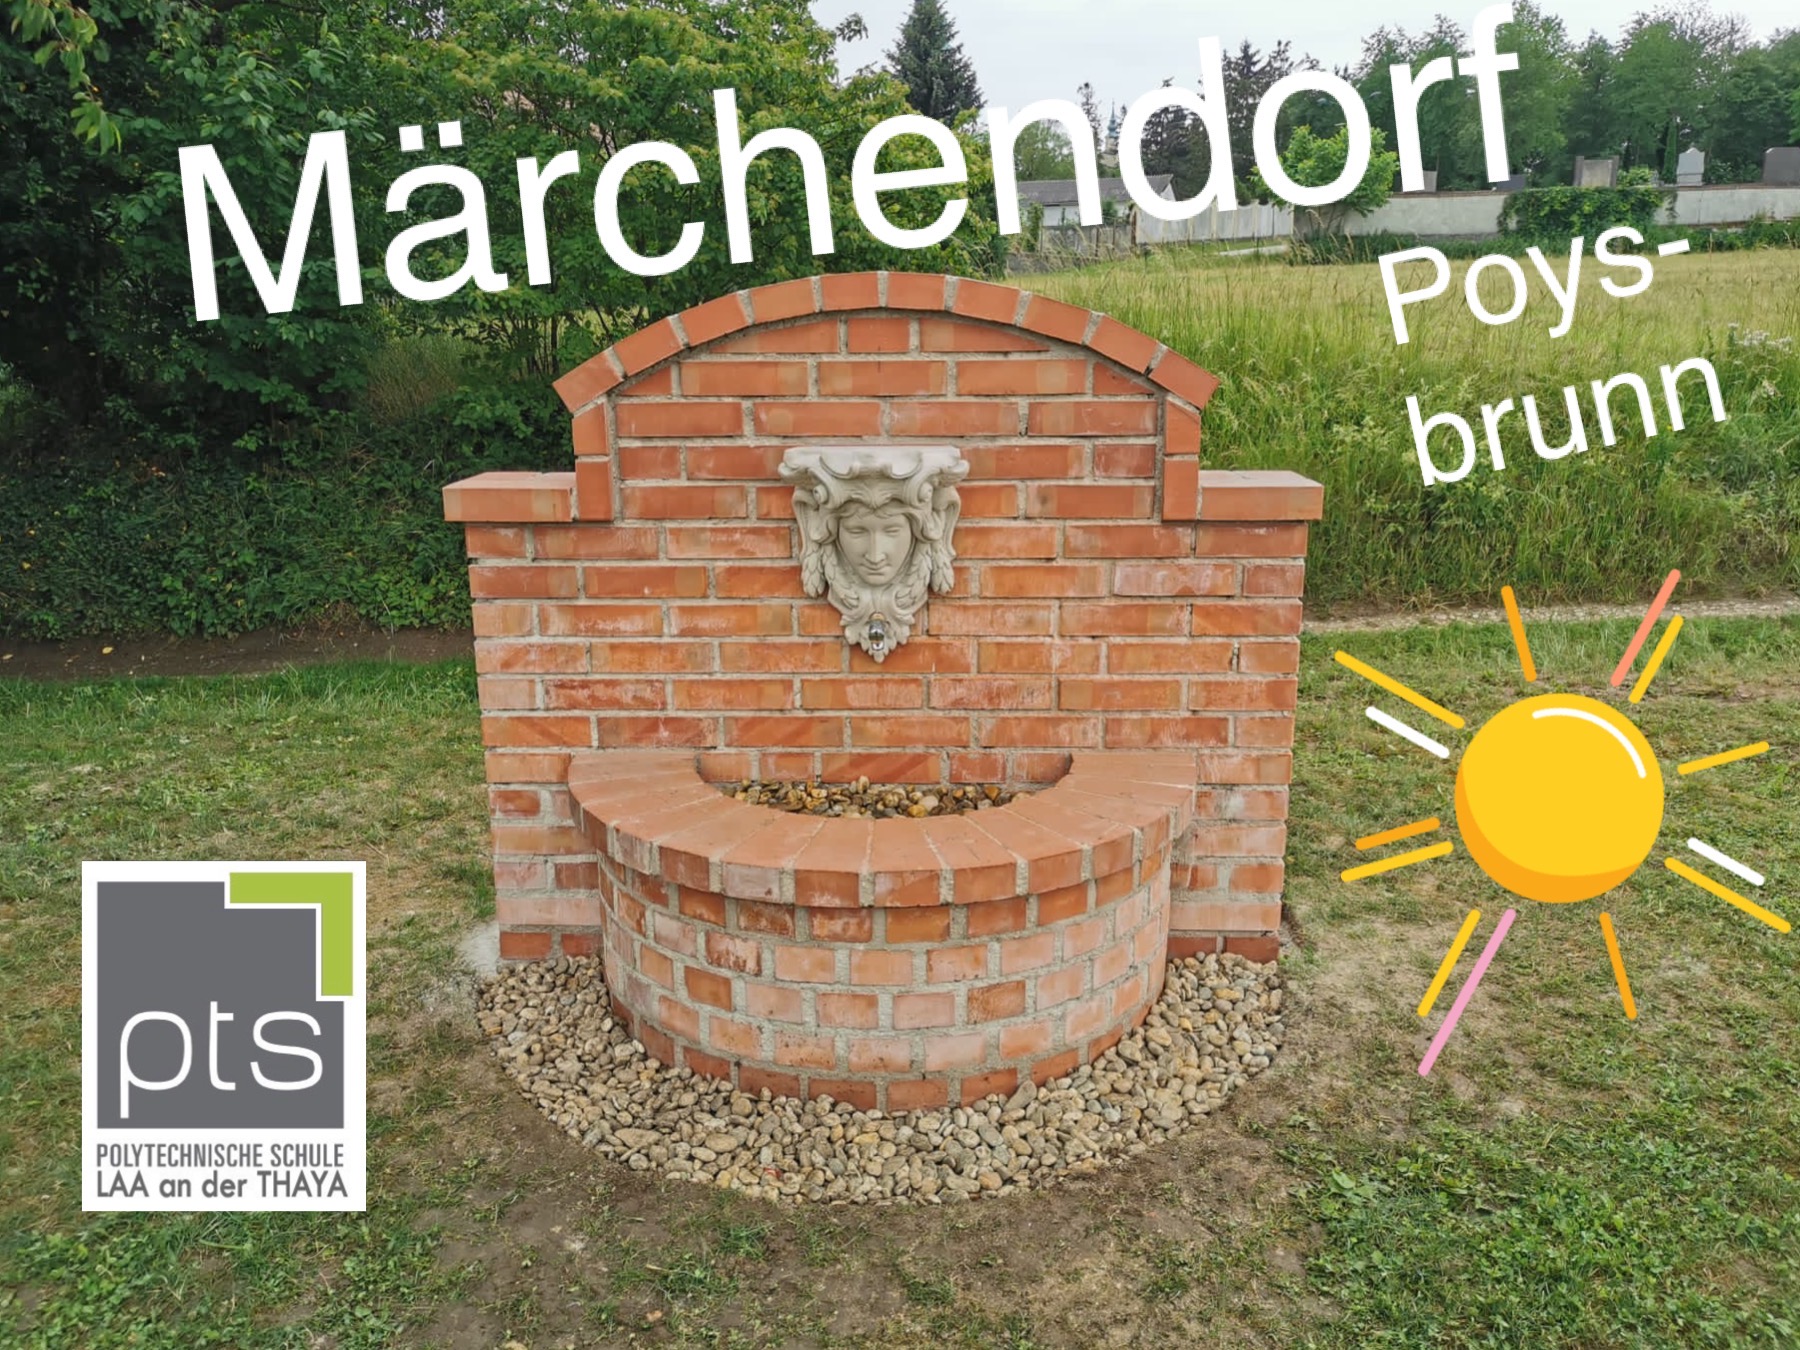 Ein Brunnen für das Märchendorf Poysbrunn